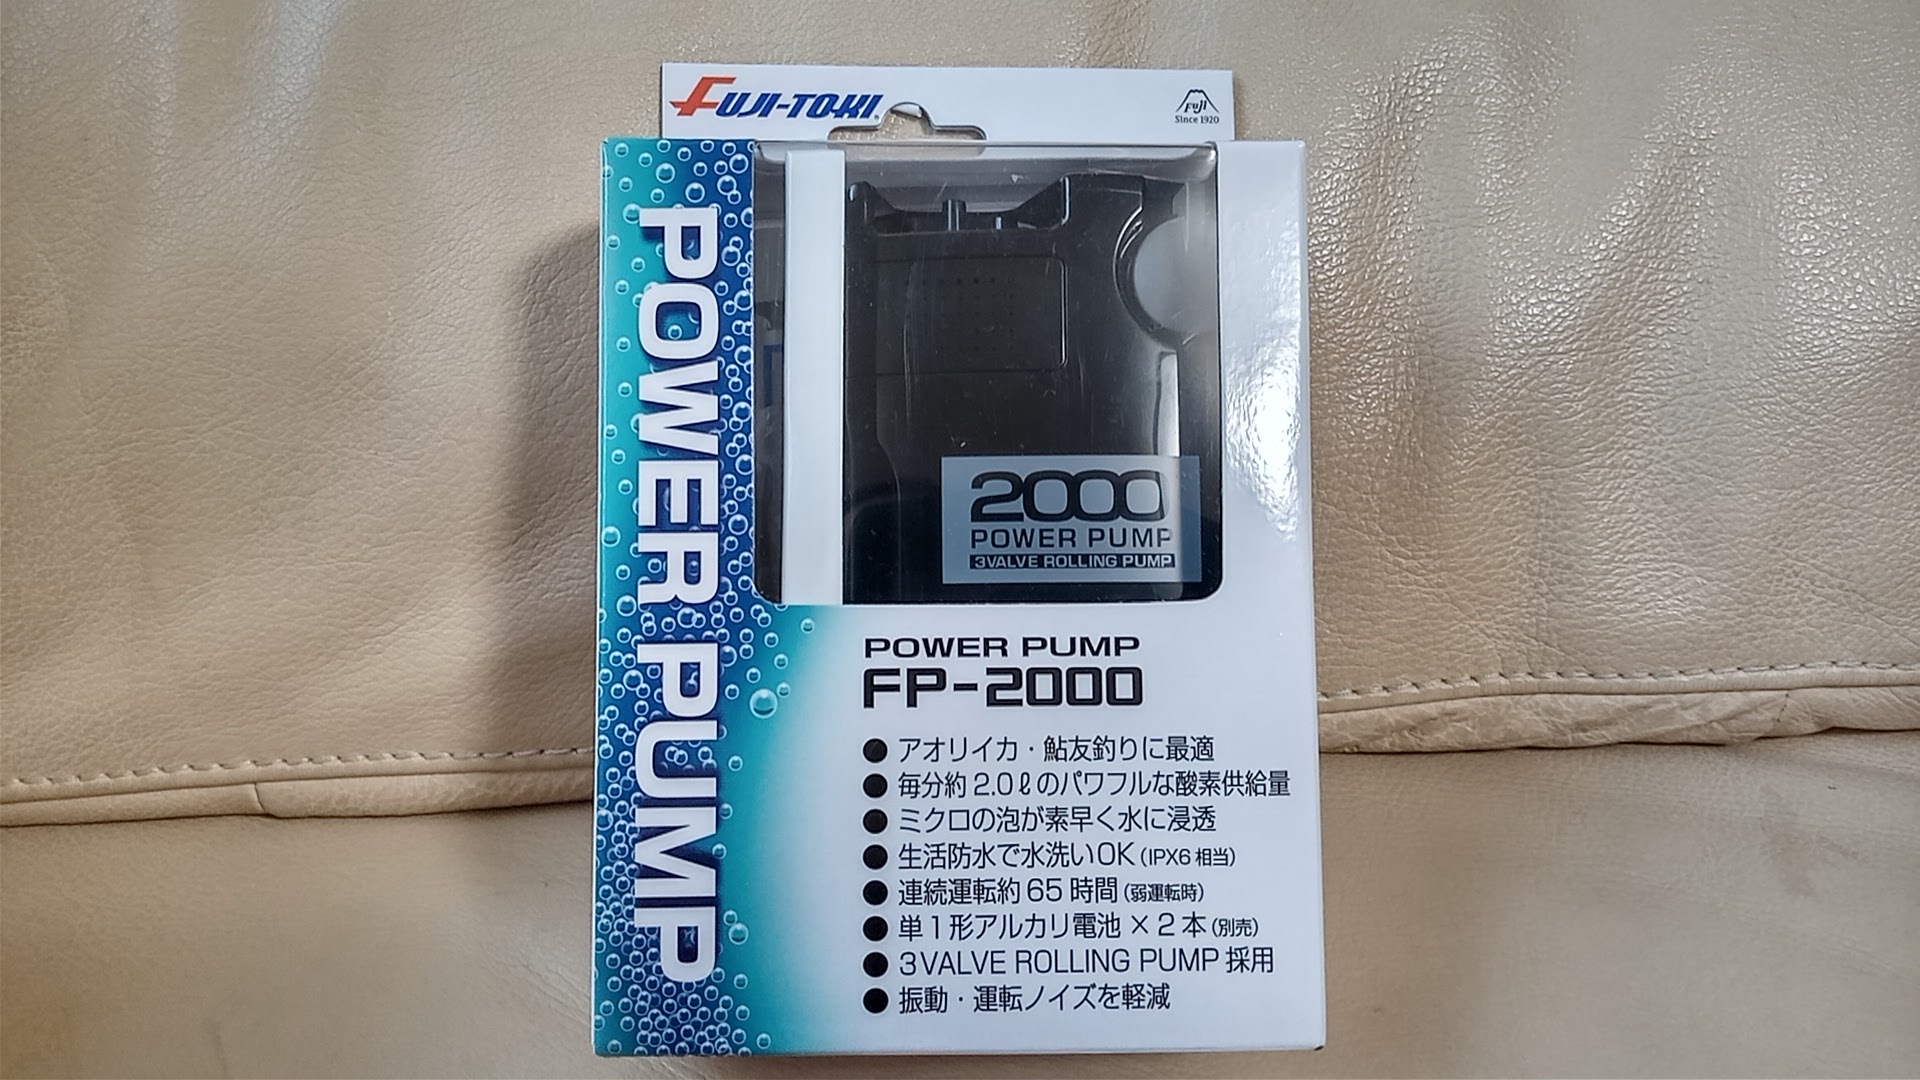 激安特価 冨士灯器 Fuji-toki パワーポンプ FP-2000 電池式エアーポンプ ブクブク broadcastrf.com